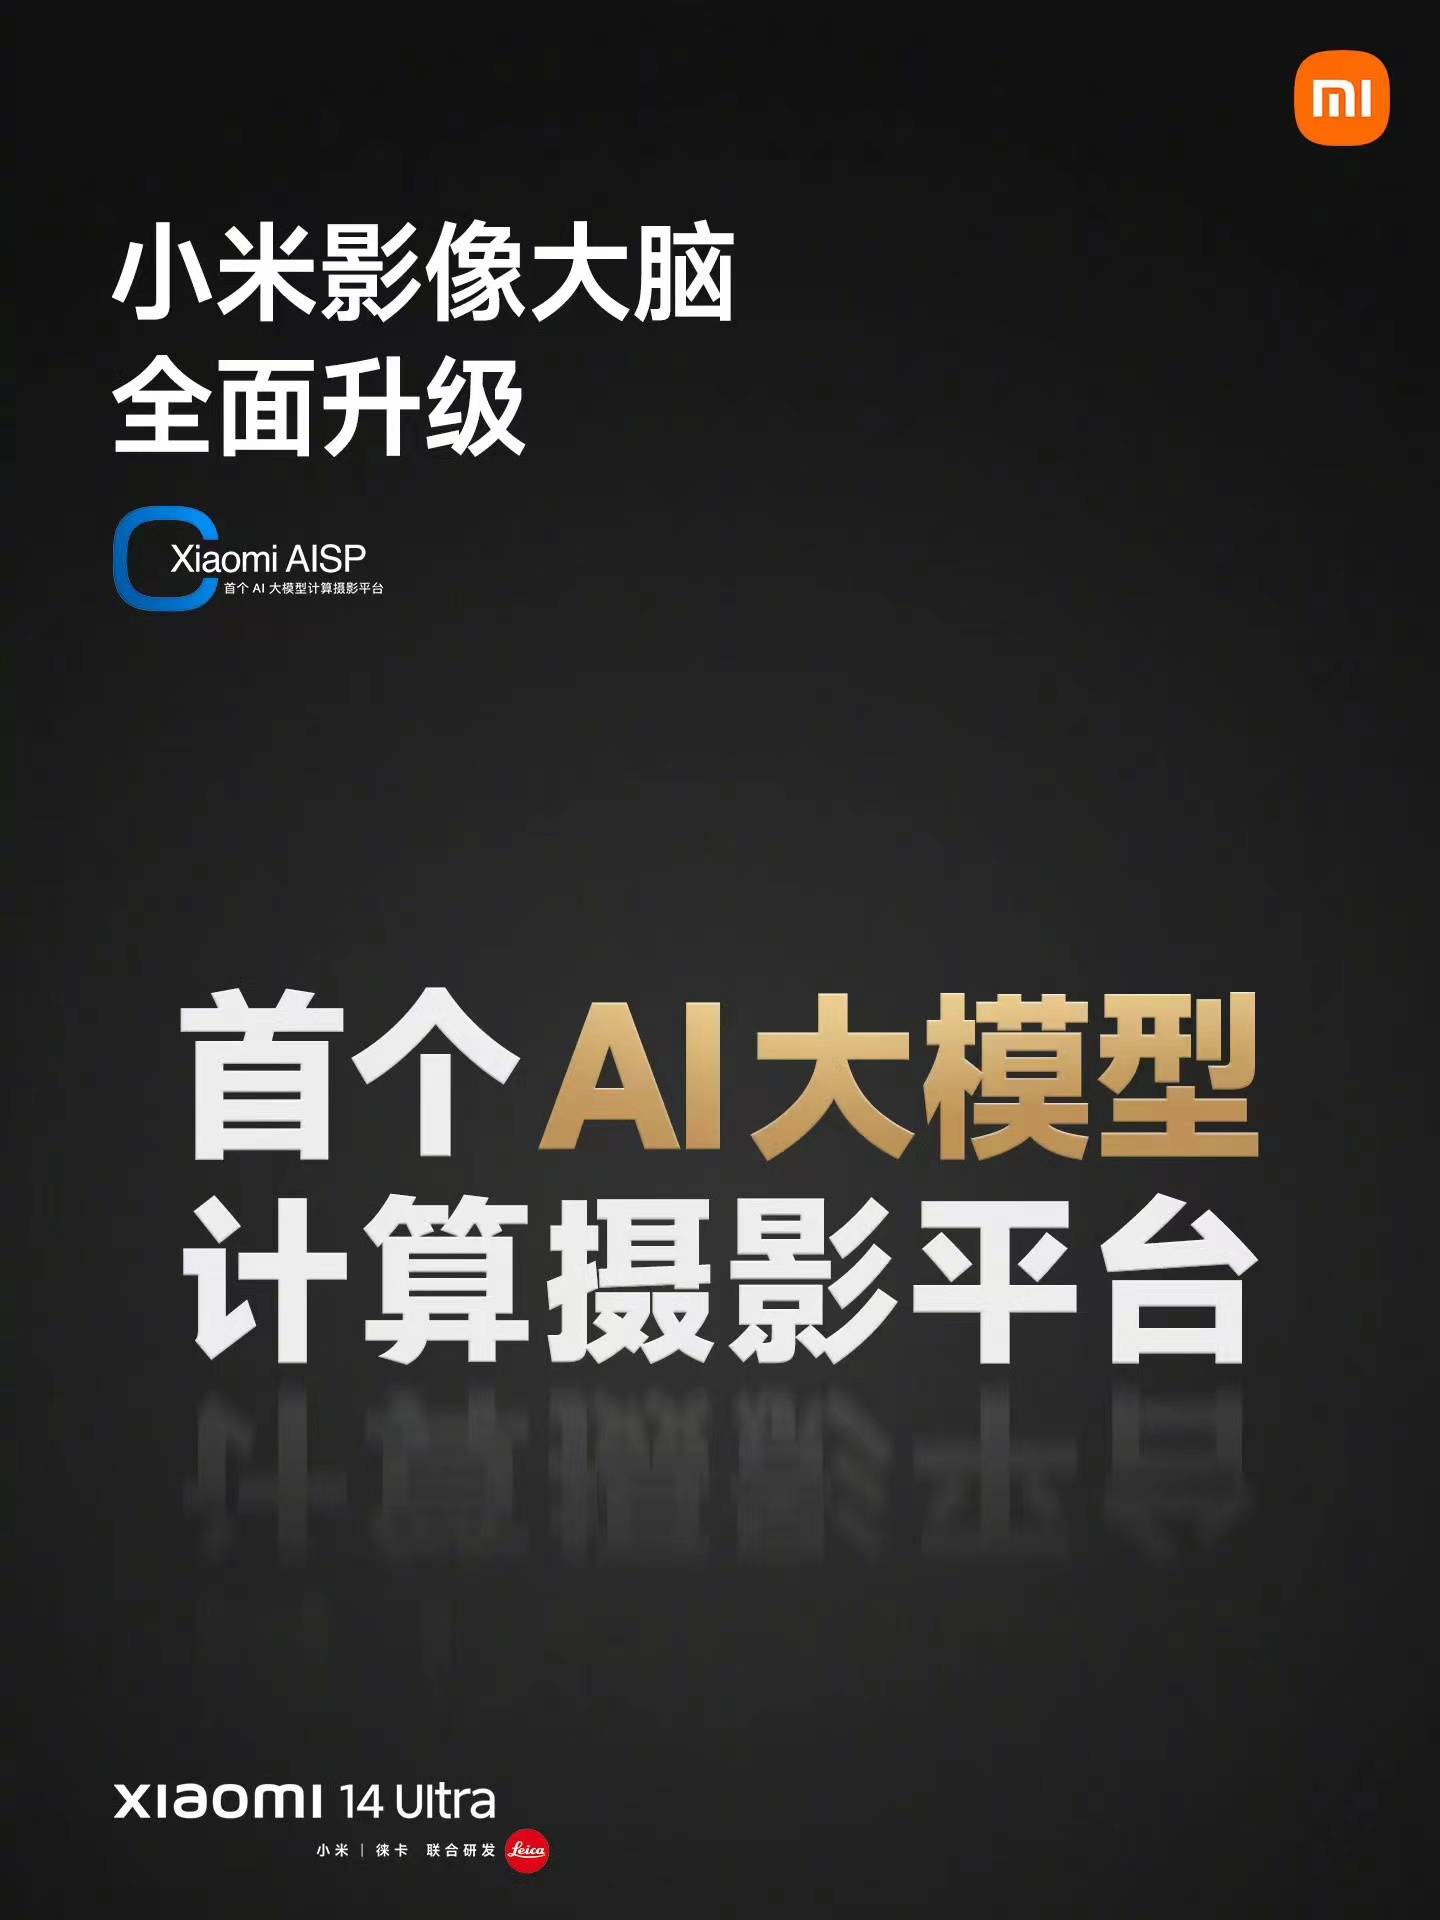 Xiaomi 14 Ultra Smartphone